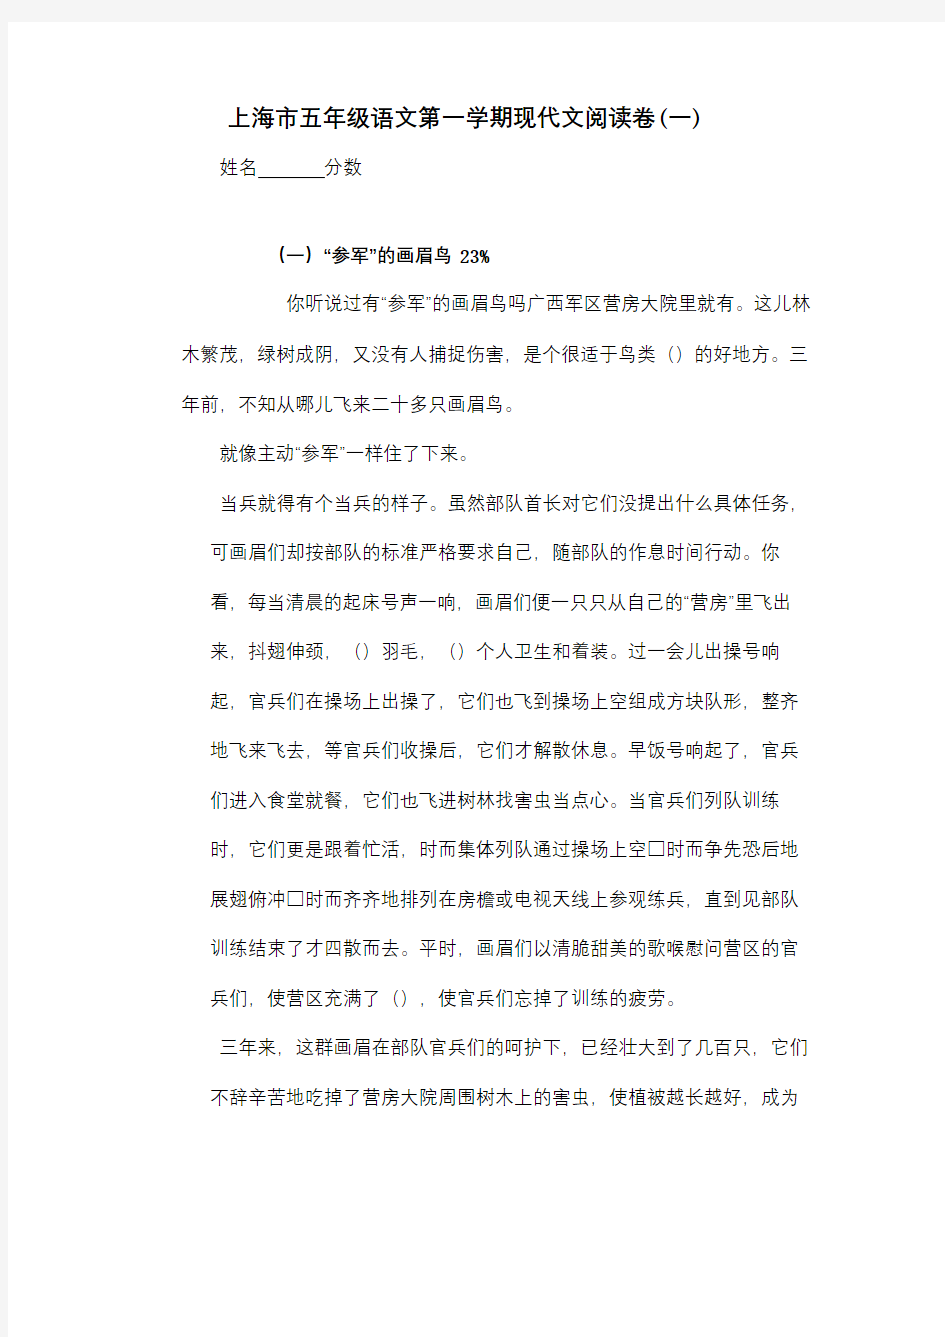 上海五年级语文第一学期现代文阅读卷